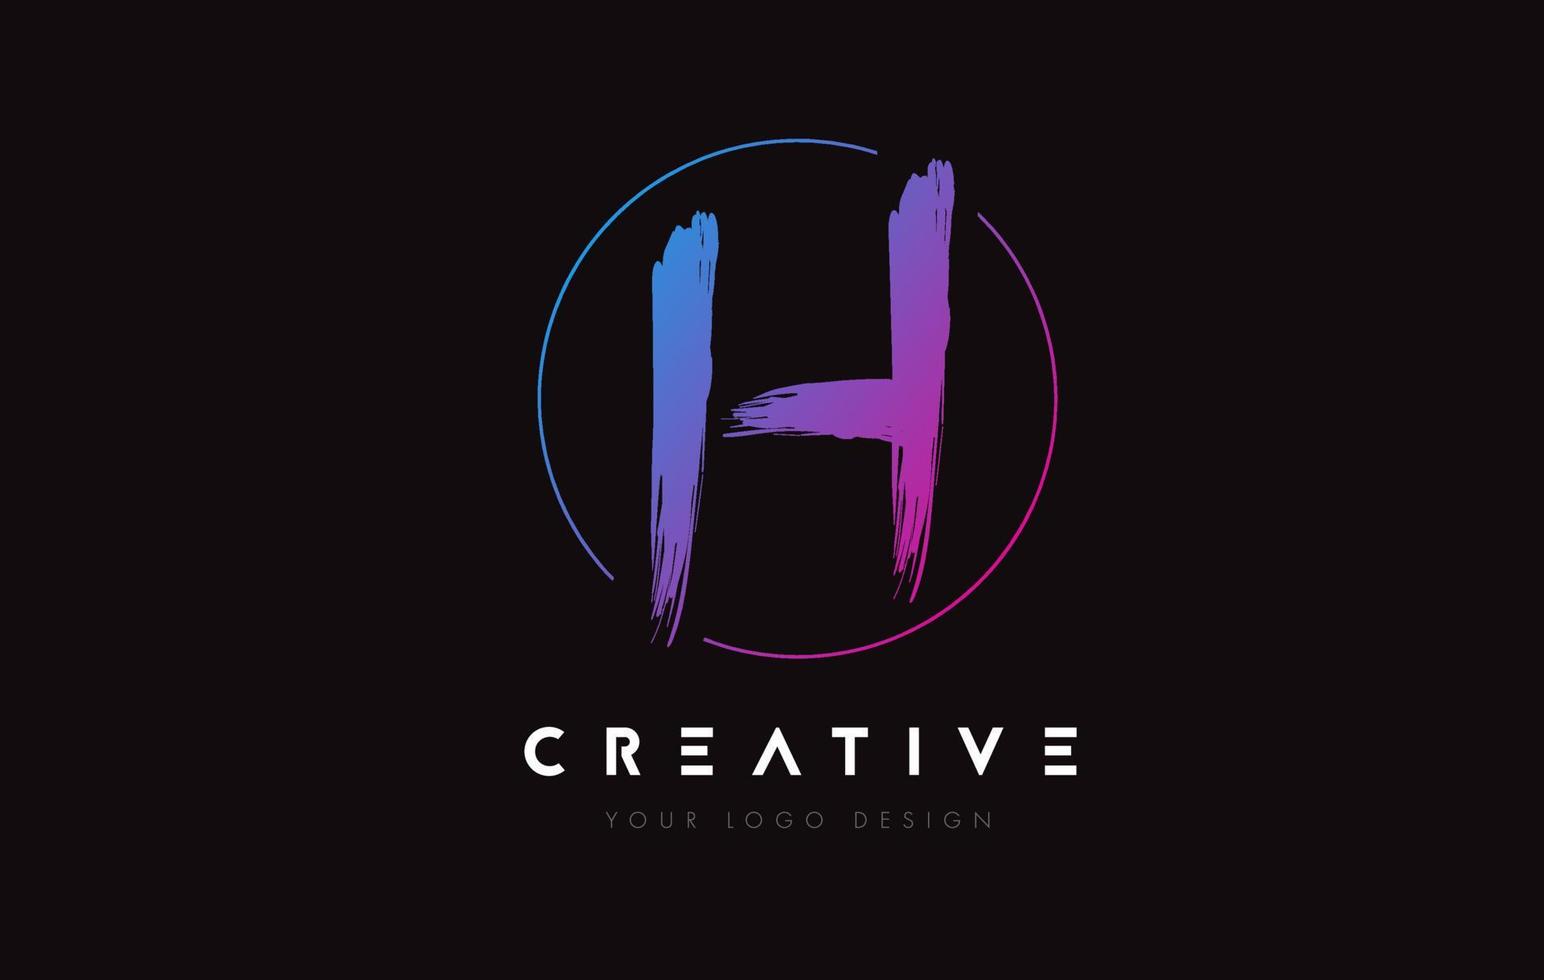 diseño creativo y colorido del logotipo de la letra del pincel h. concepto de logotipo de letras manuscritas artísticas. vector